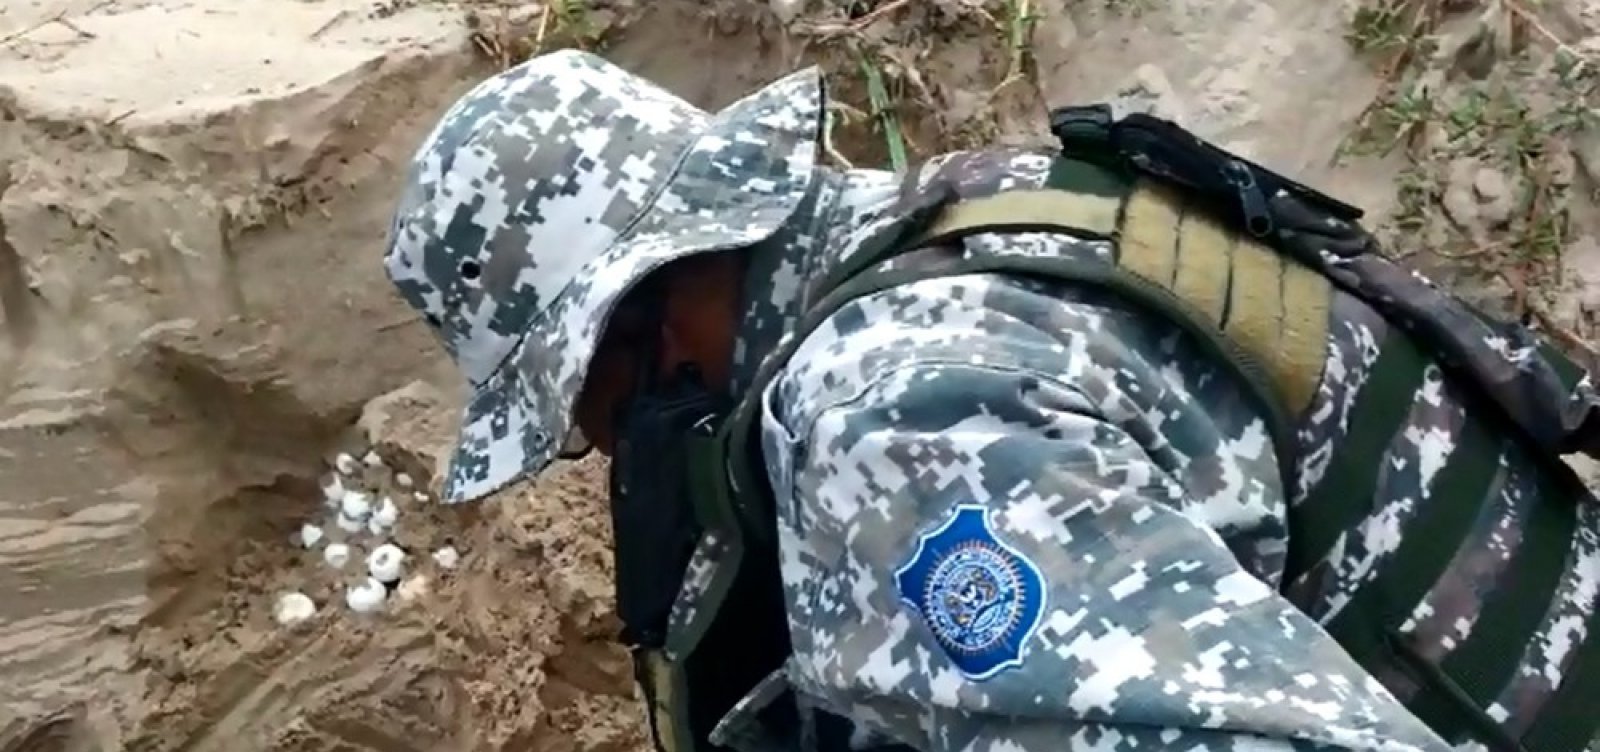 Guarda Civil resgata mais de 100 ovos de tartaruga em Patamares